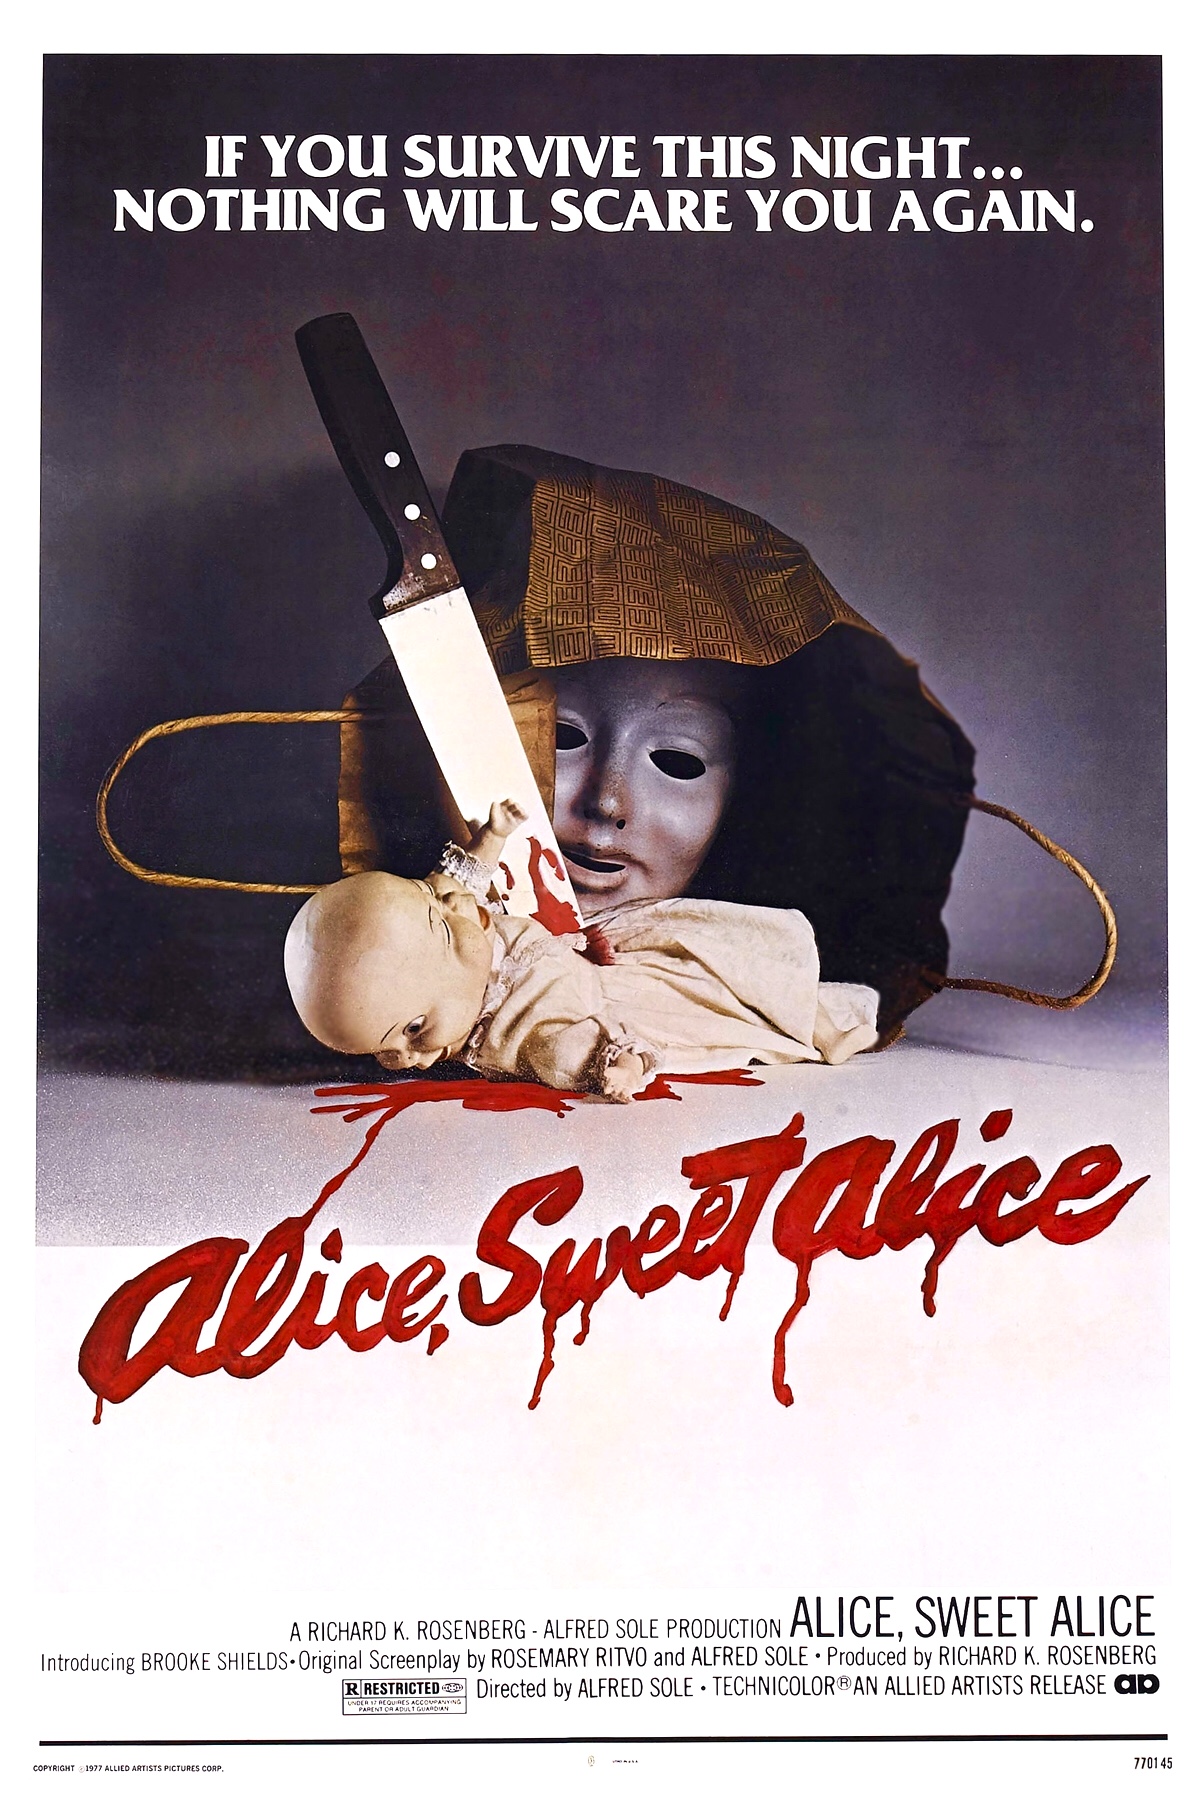 Nonton film Alice Sweet Alice layarkaca21 indoxx1 ganool online streaming terbaru